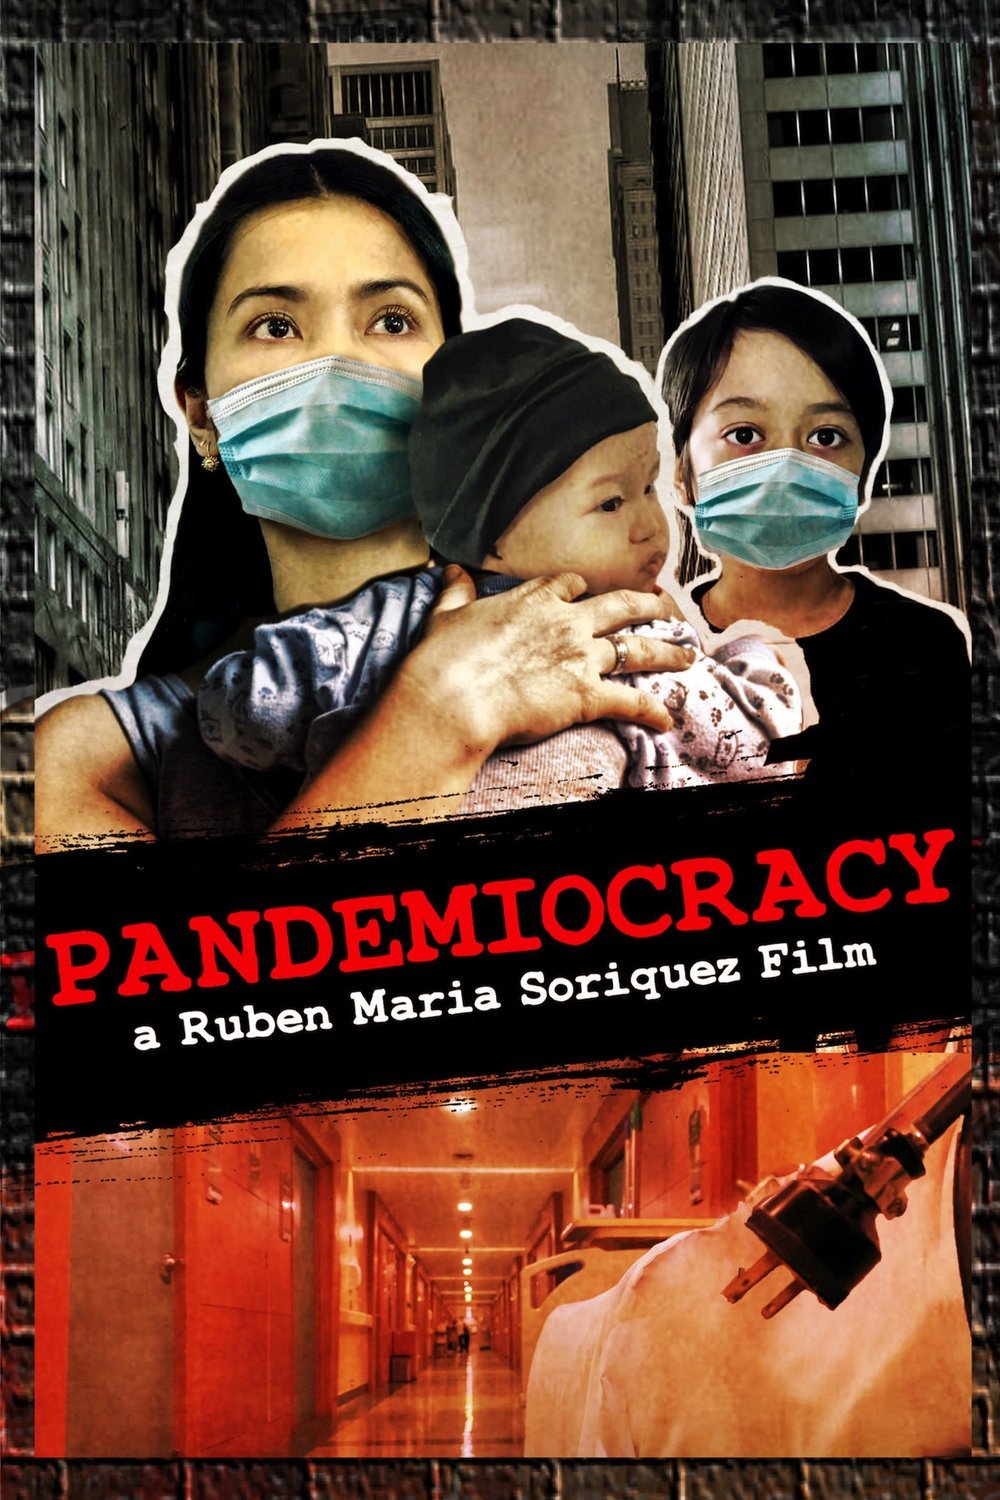 L'affiche du film Pandemiocracy